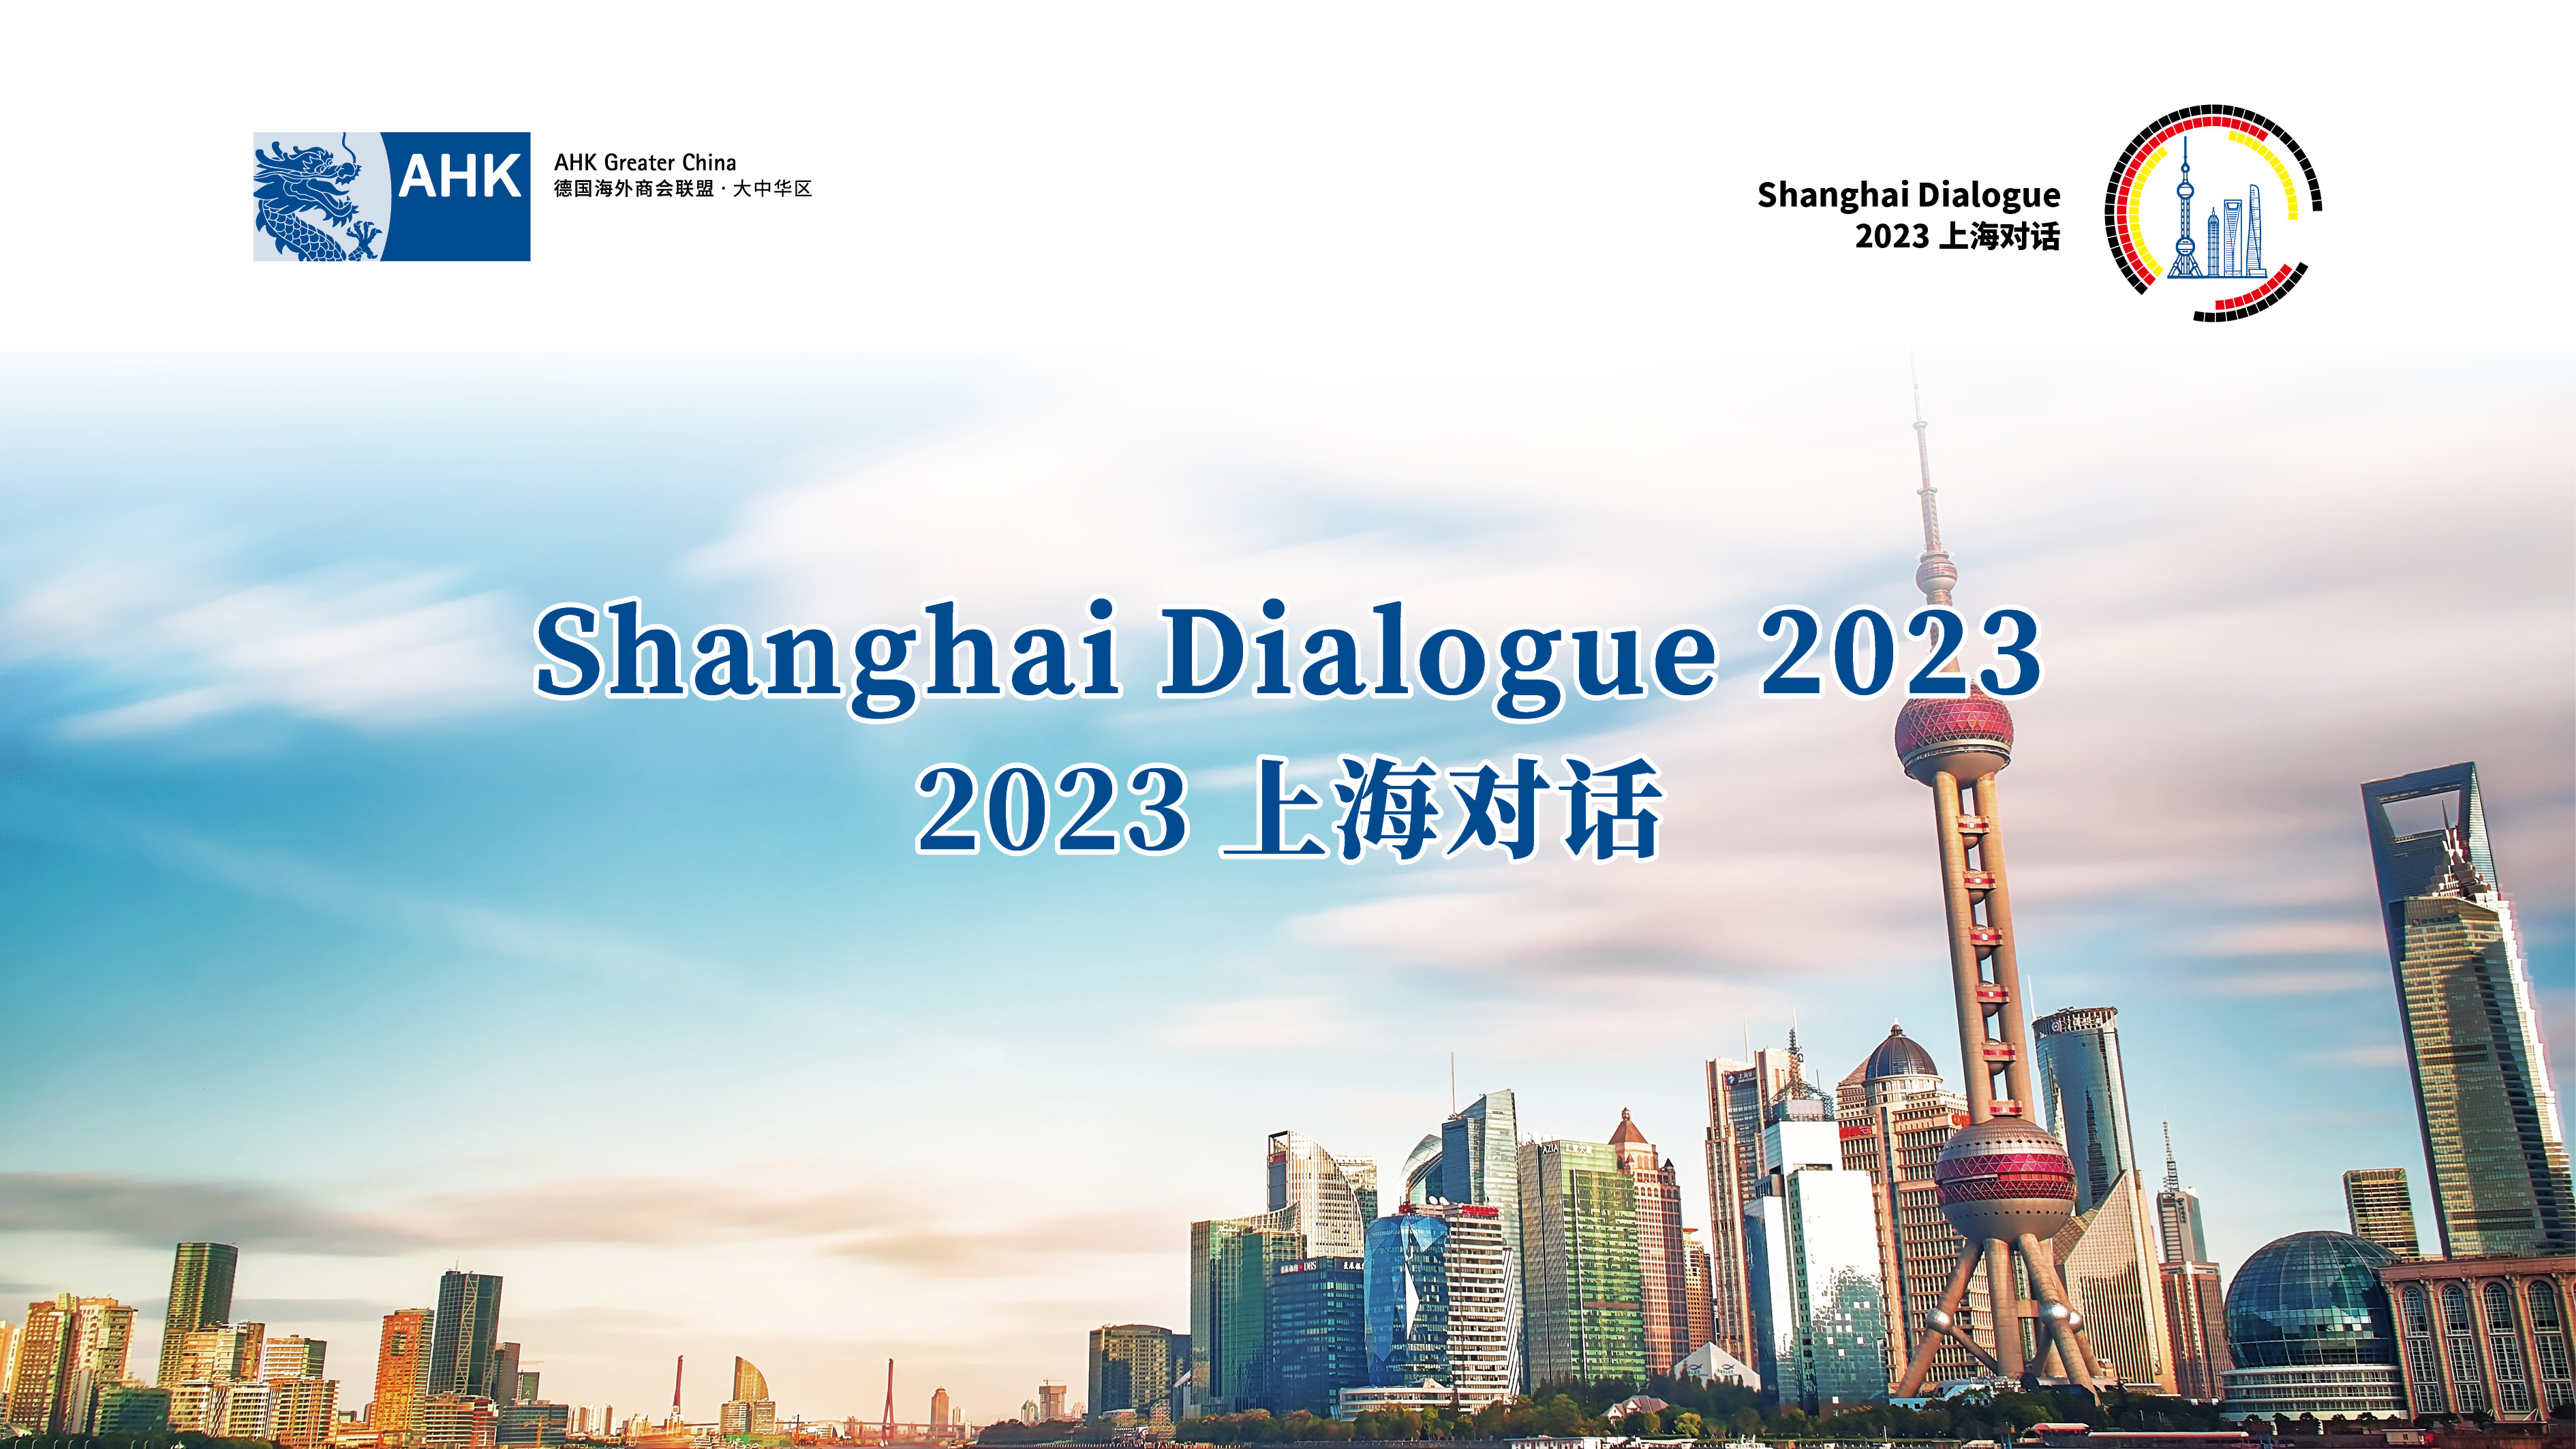 [ Feb. 2  |  Shanghai ] 2023 Shanghai Dialogue  上海对话 2023